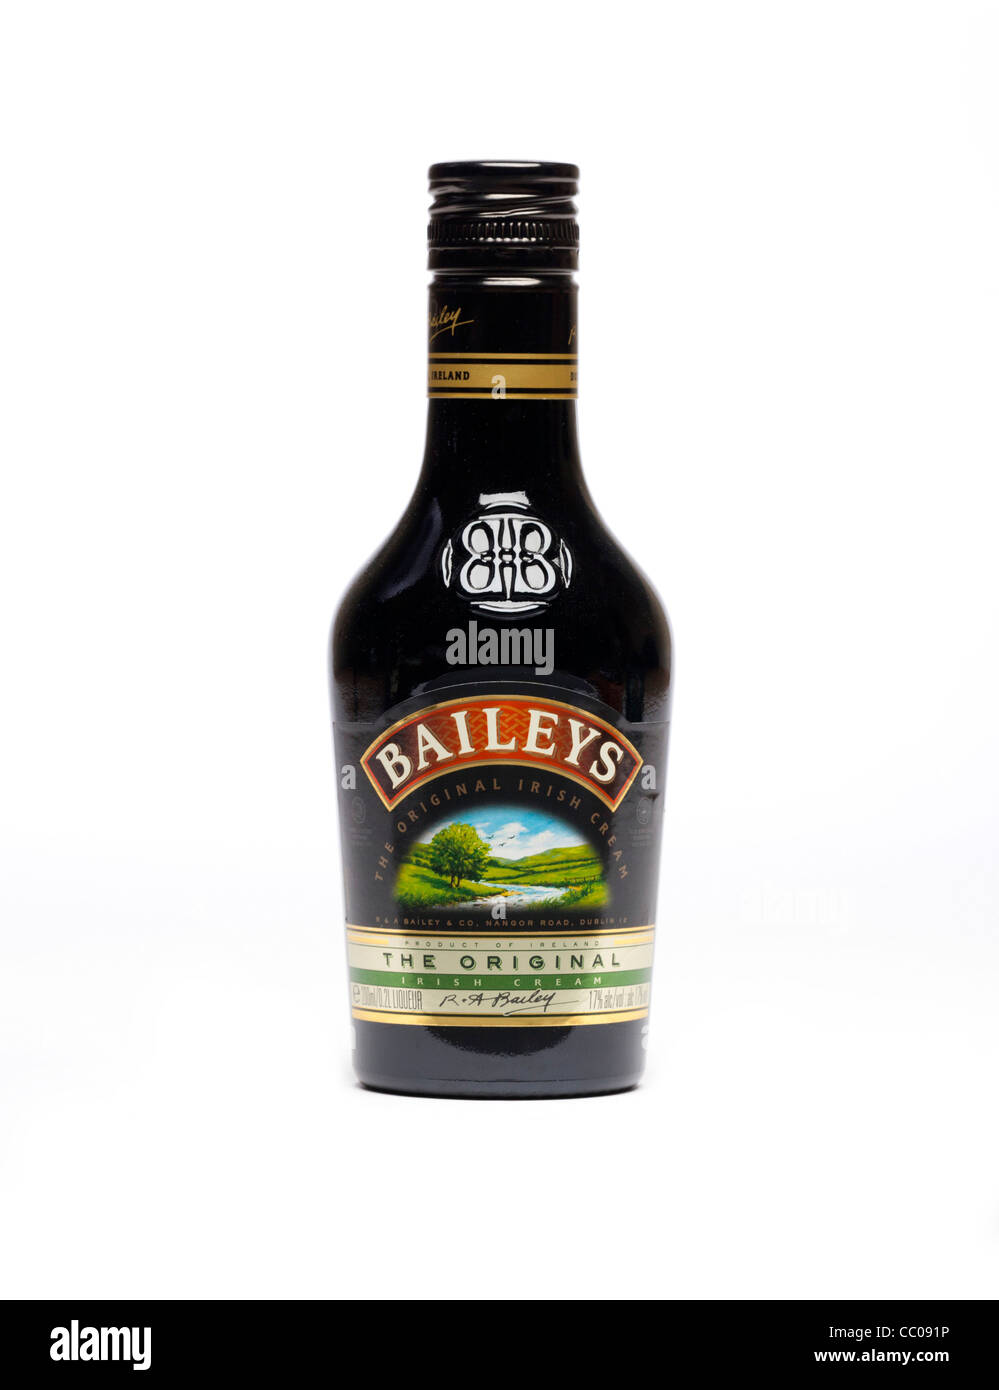 Bottiglia di Baileys liquore Irish cream Foto Stock